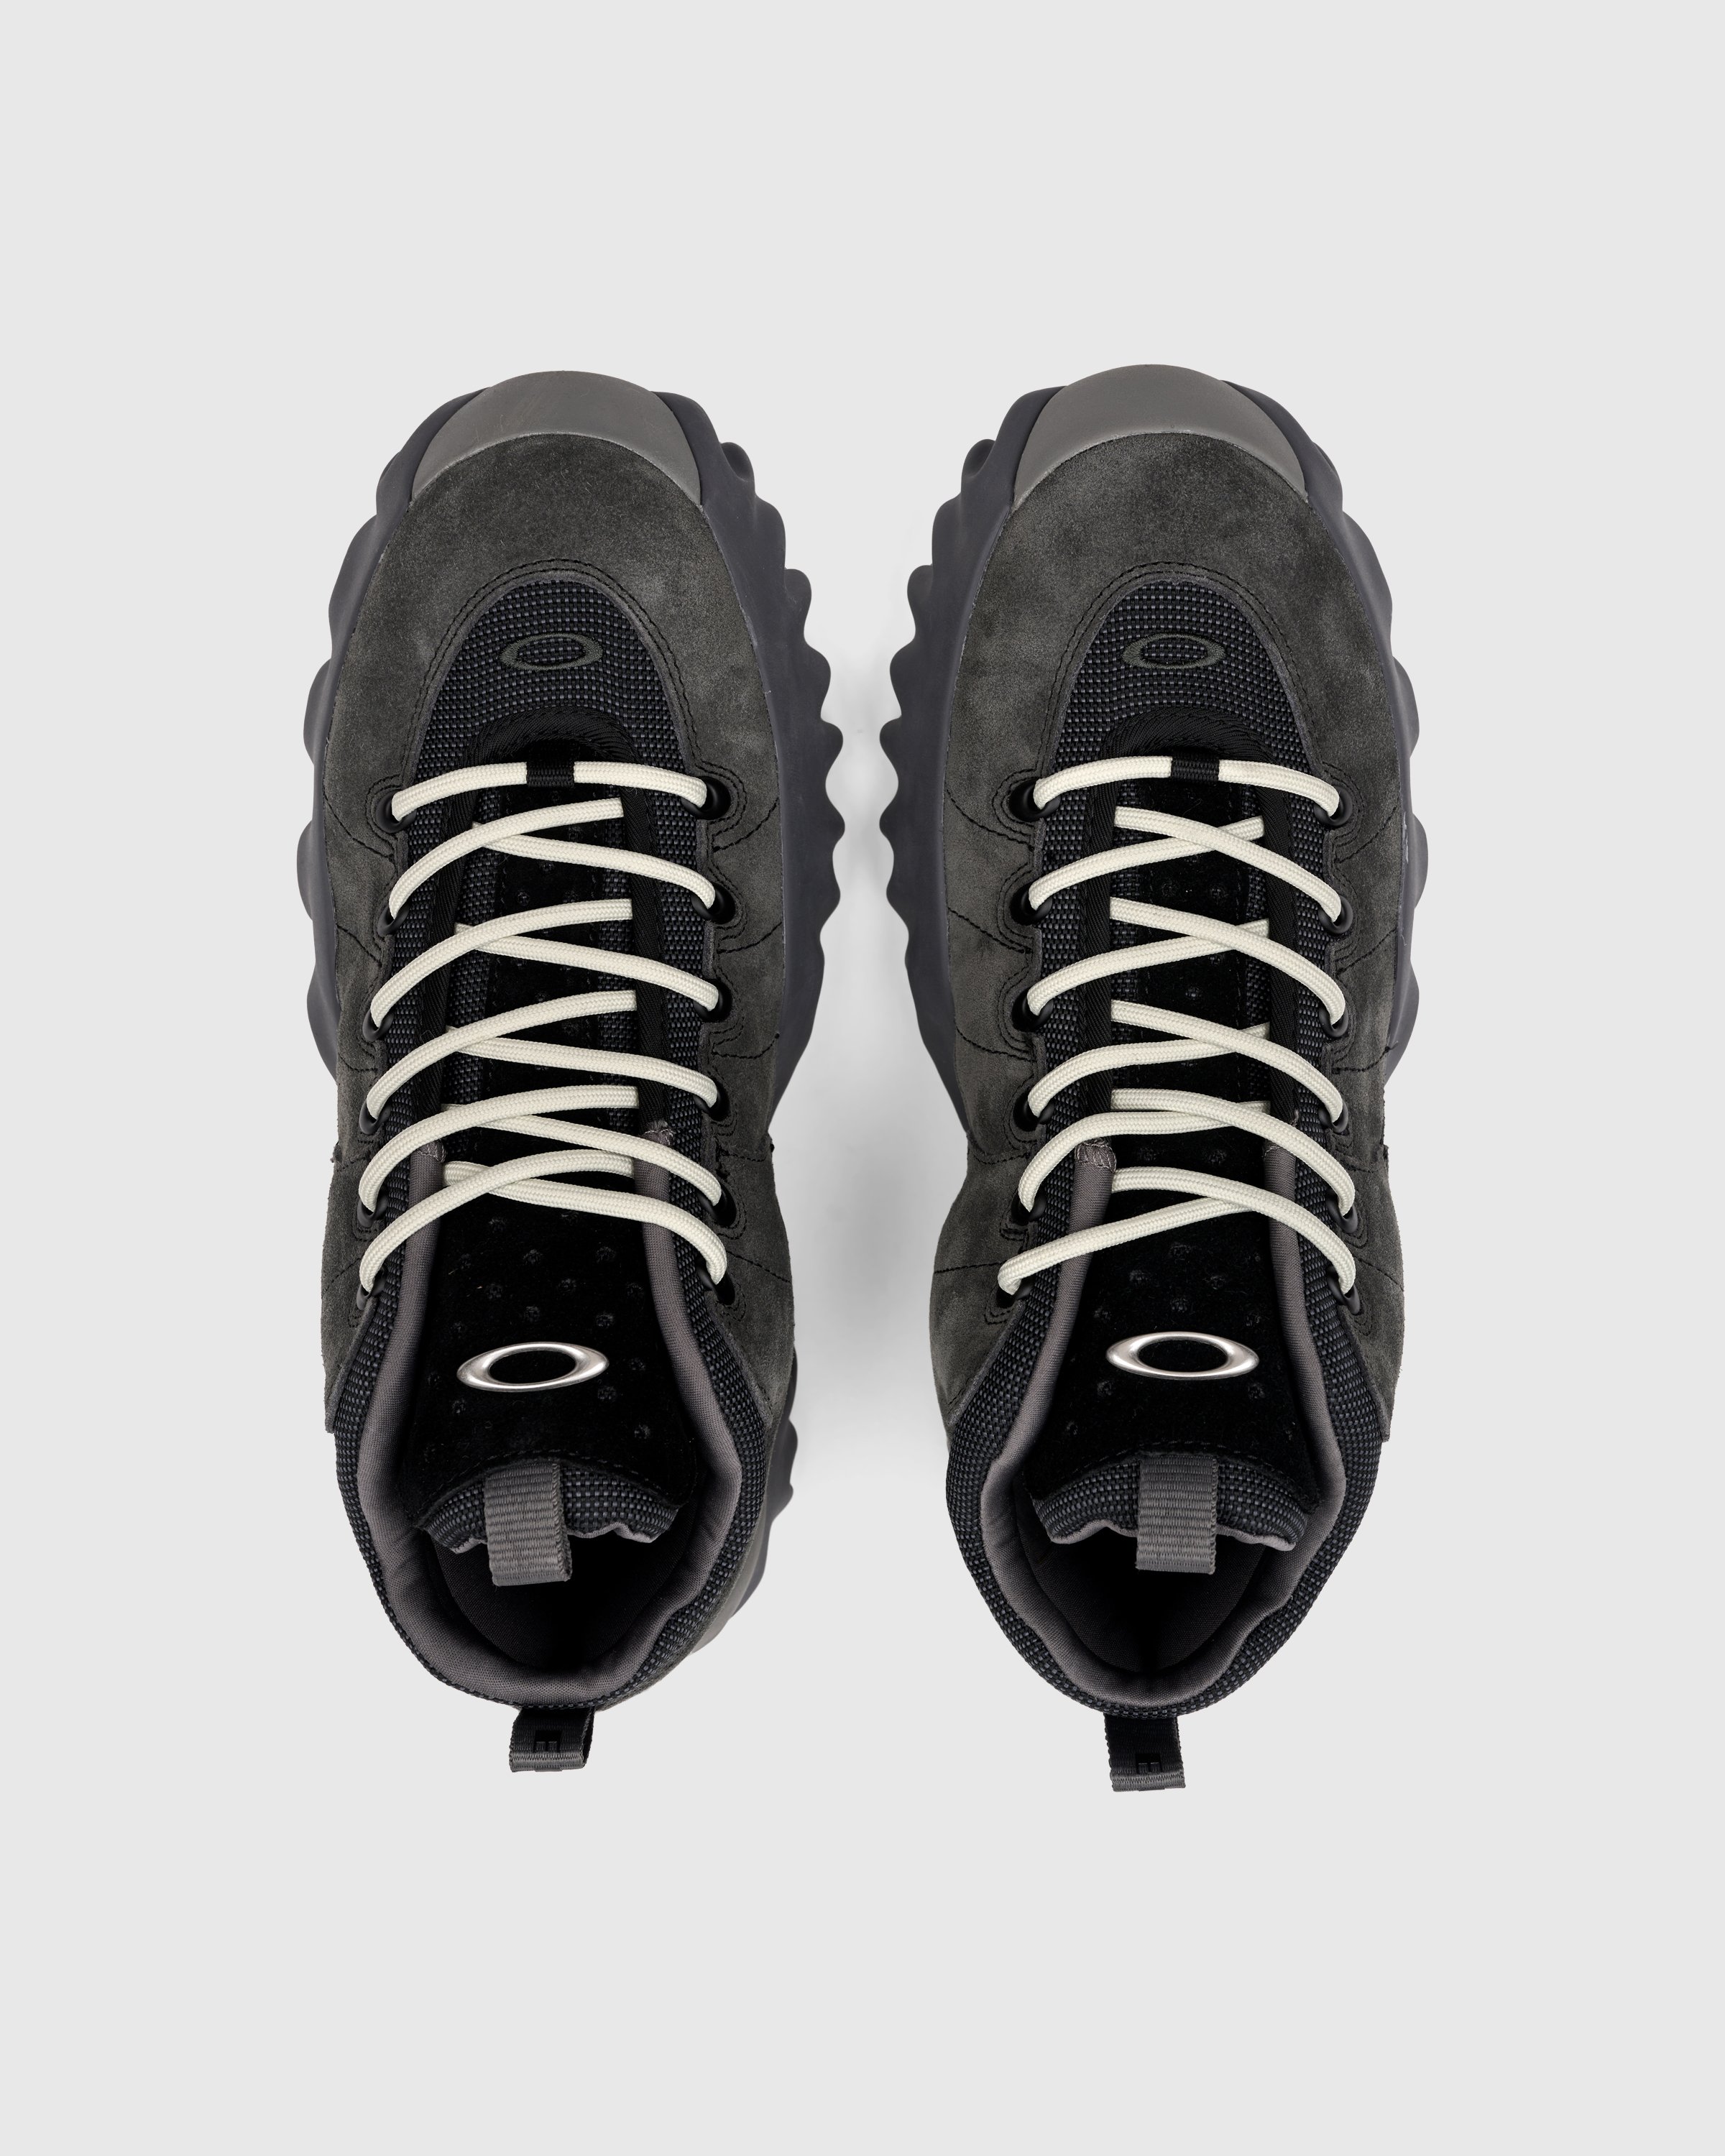 Oakley Factory Team - Nubuck Edge Boot Black/Ink - Footwear - Black - Image 4